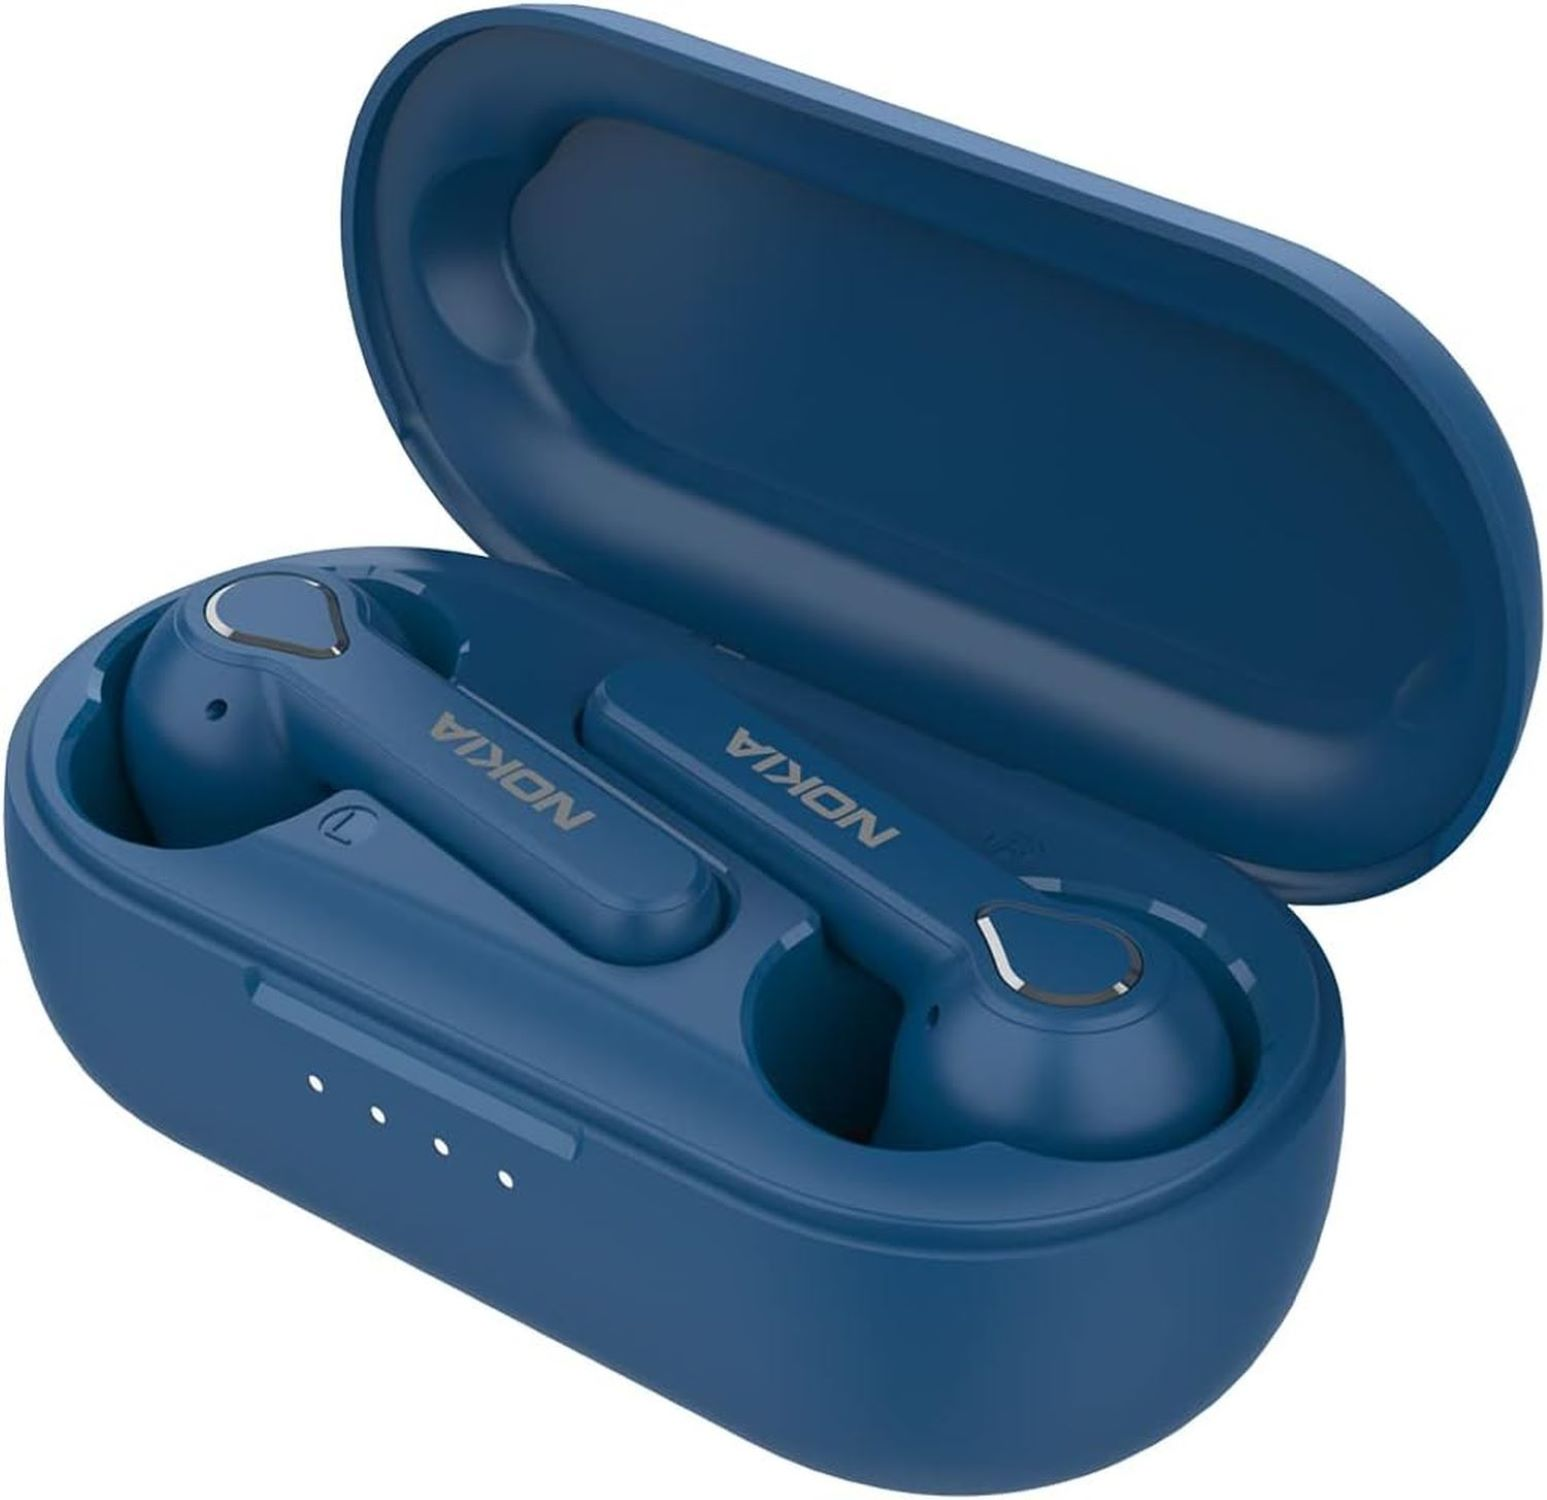 BH-205, Blau Bluetooth kopfhörer In-ear NOKIA